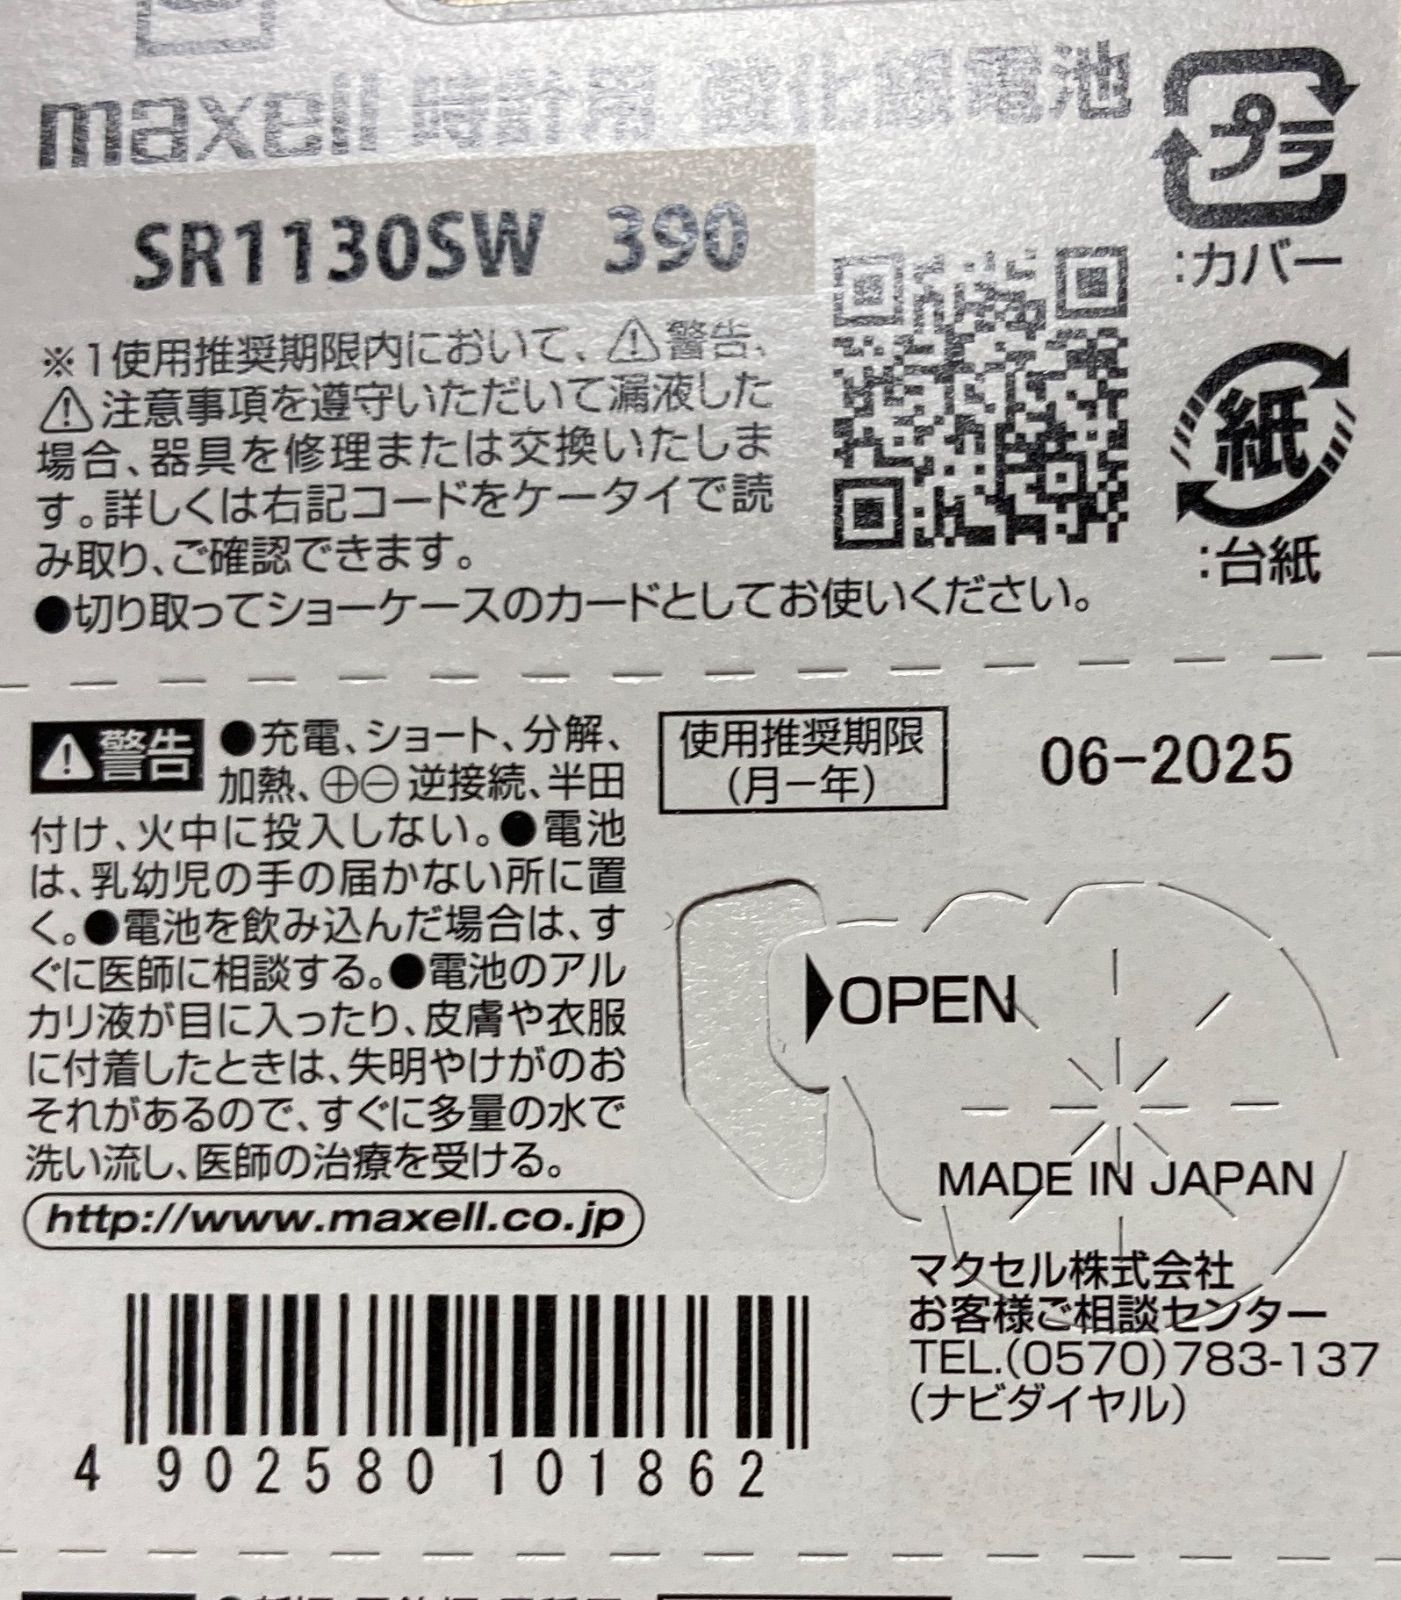 安心の日本仕様 maxell 金コーティング SR1130SW 酸化銀電池20個 メルカリShops